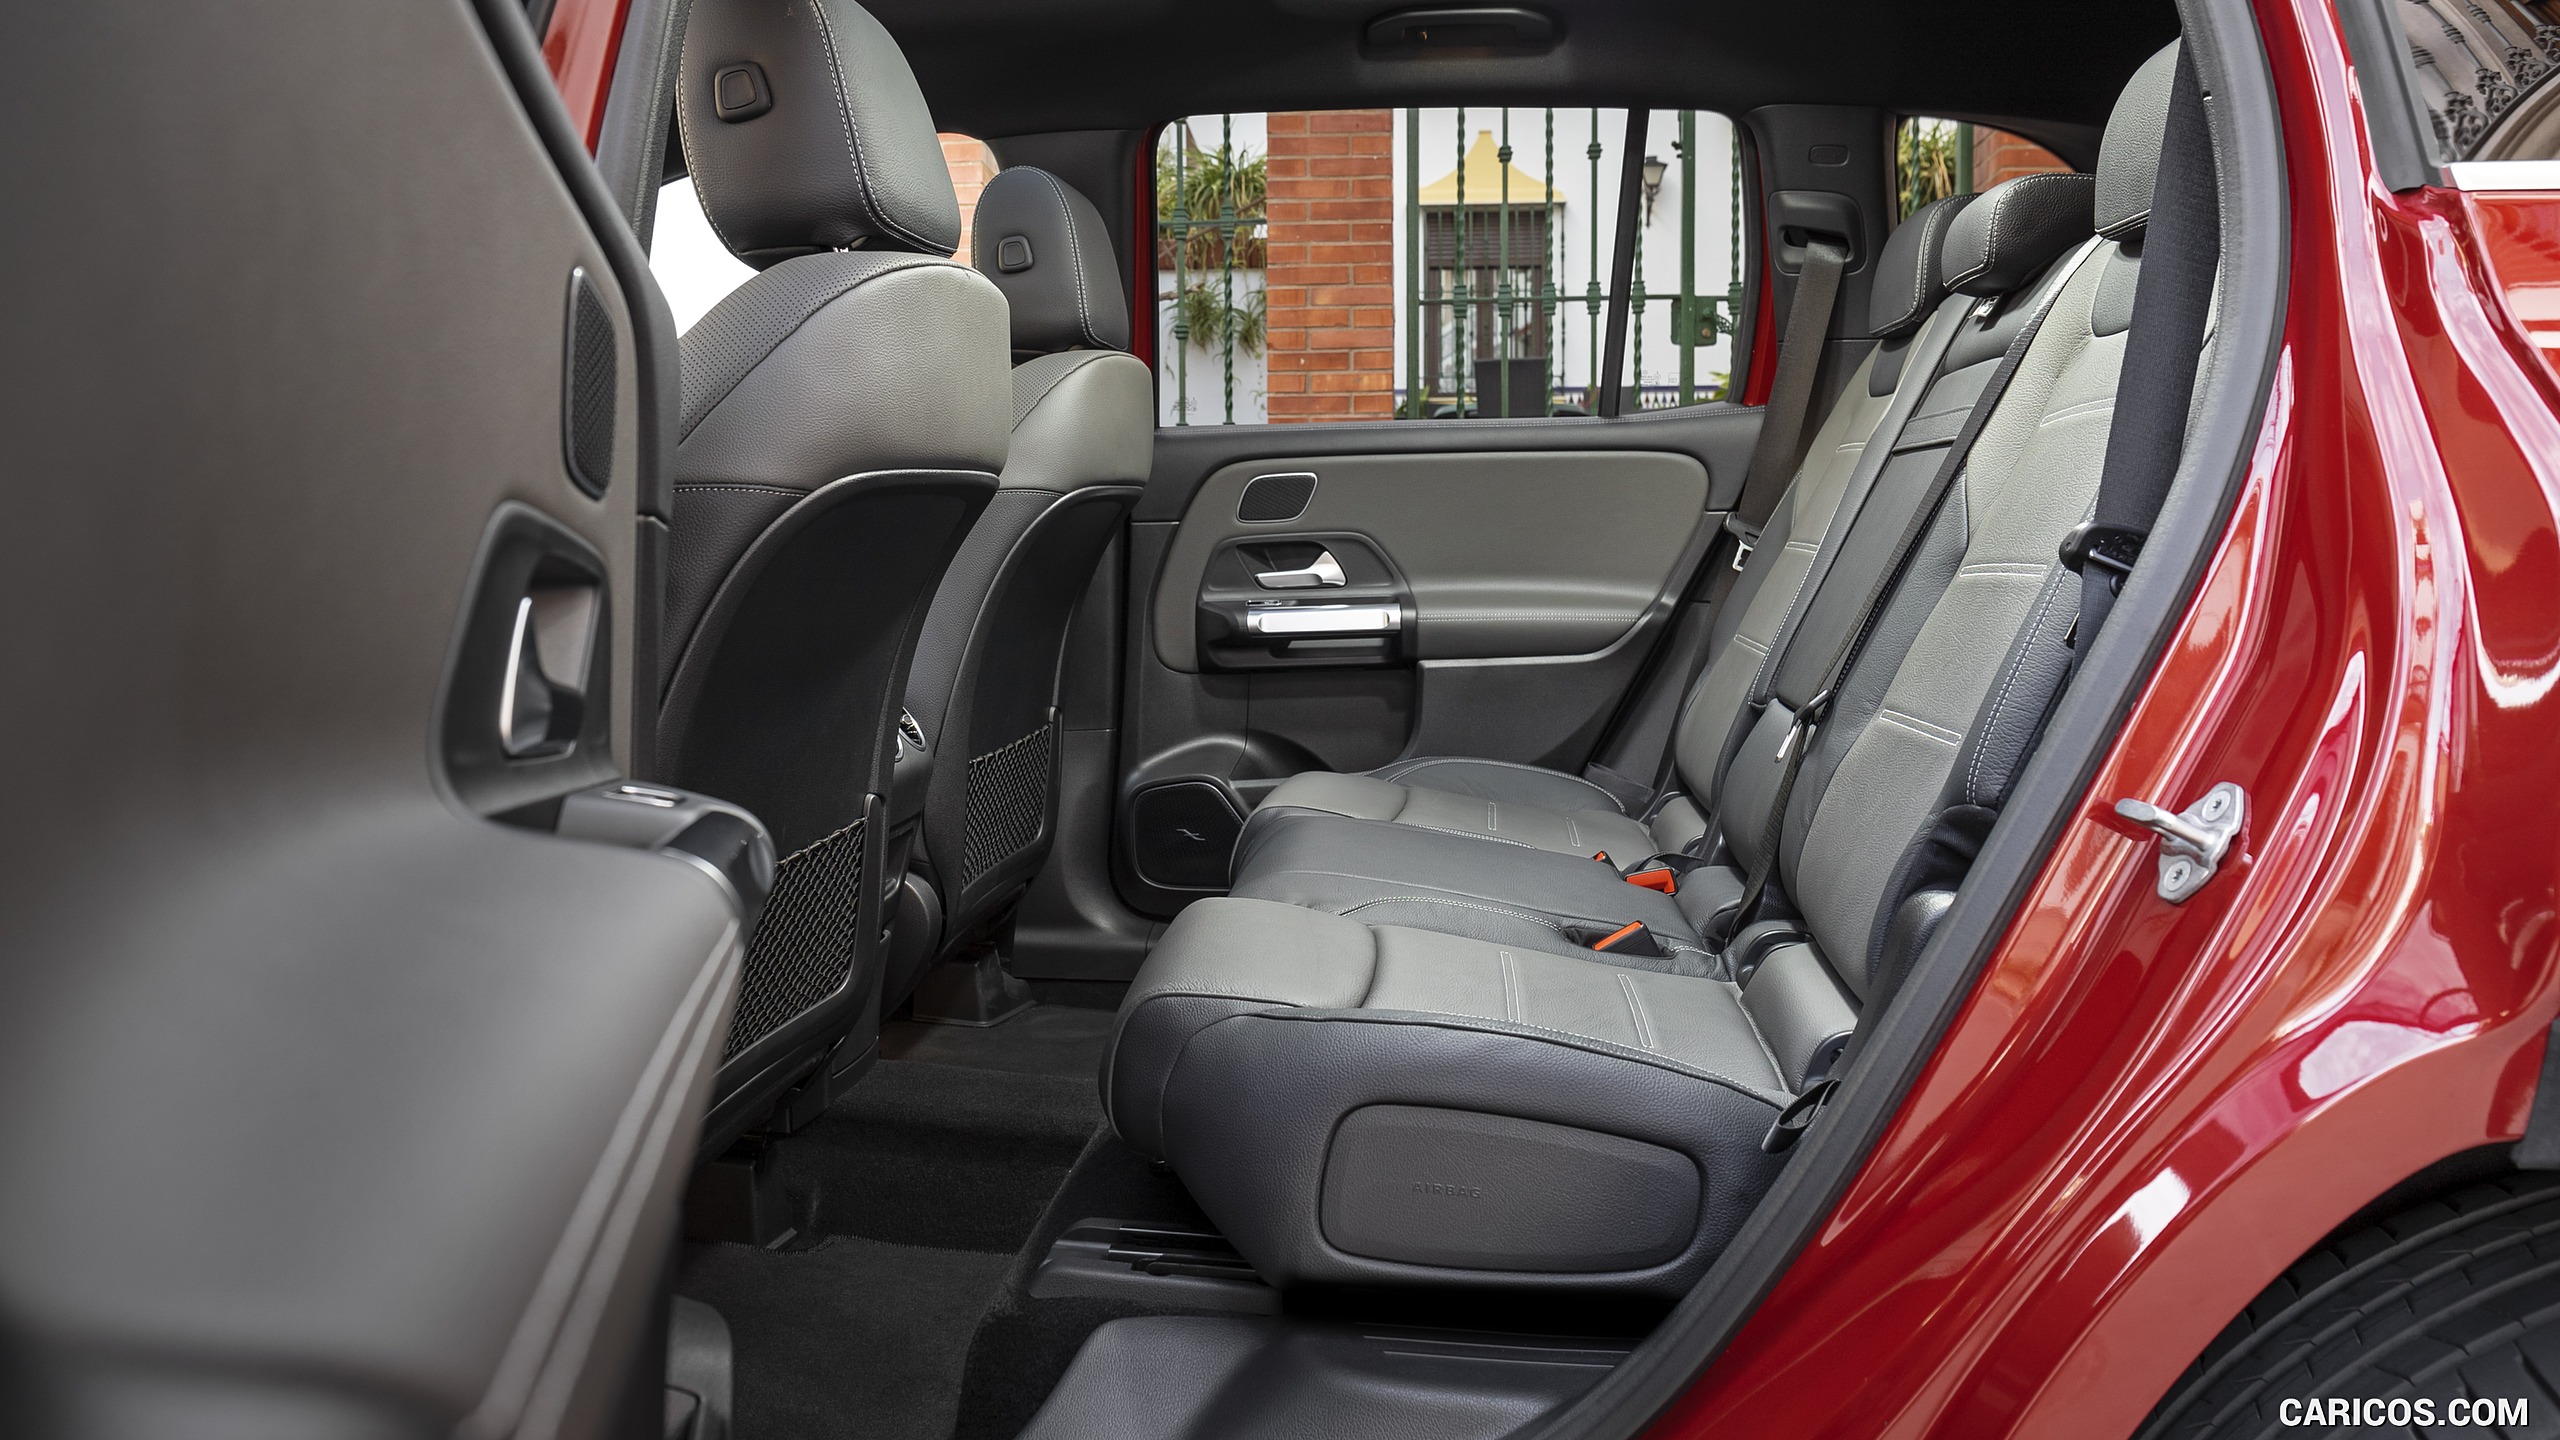 2020 Mercedes-Benz GLB - Interior, Rear Seats, #140 of 186